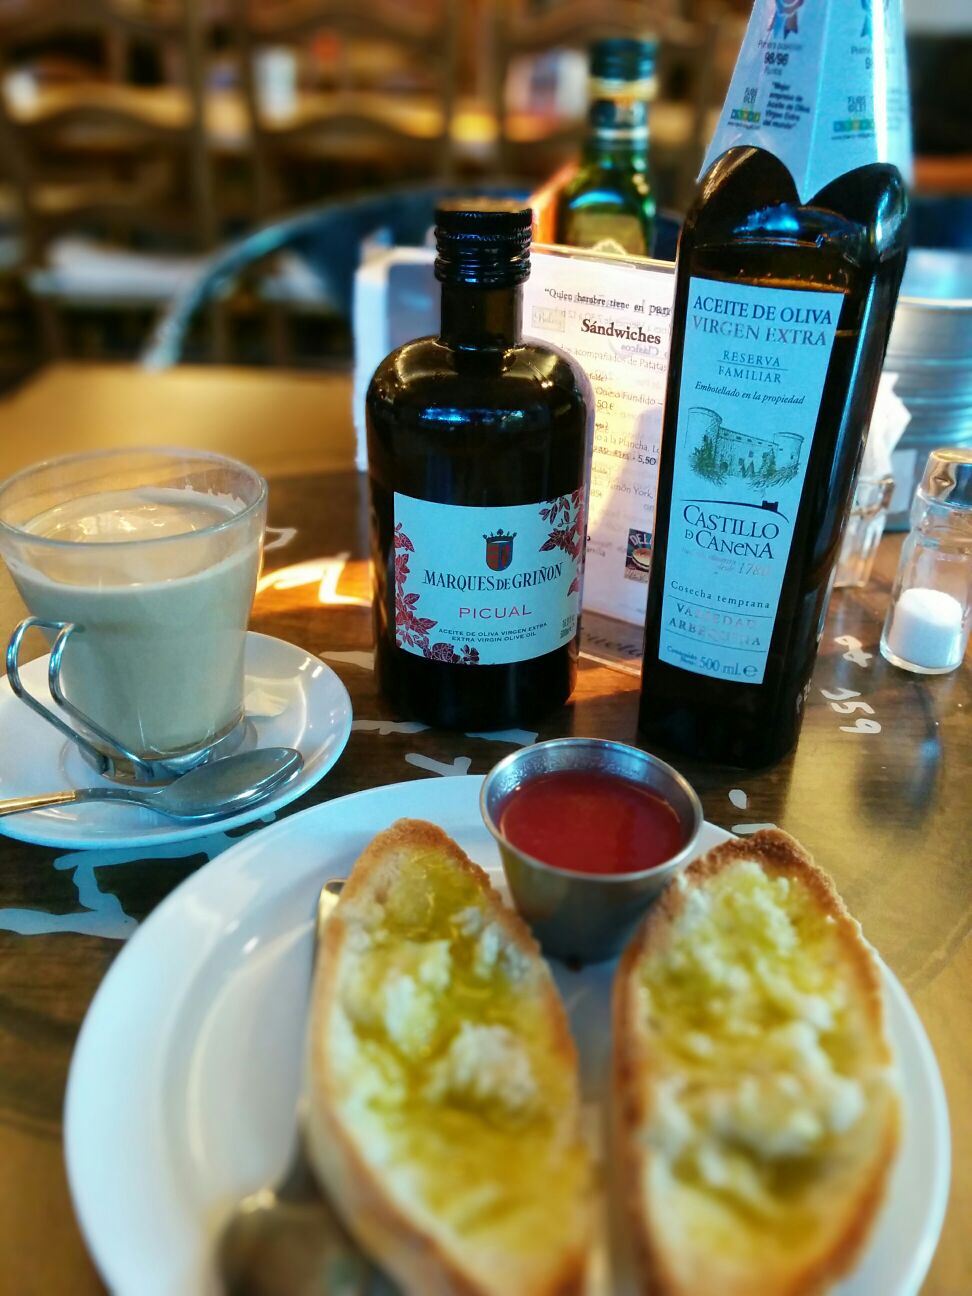 ¡En Madrid puedes desayunar en algunos lugares con aceites de oliva espectaculares! @CastillodCanena @MarquesDeGrinon